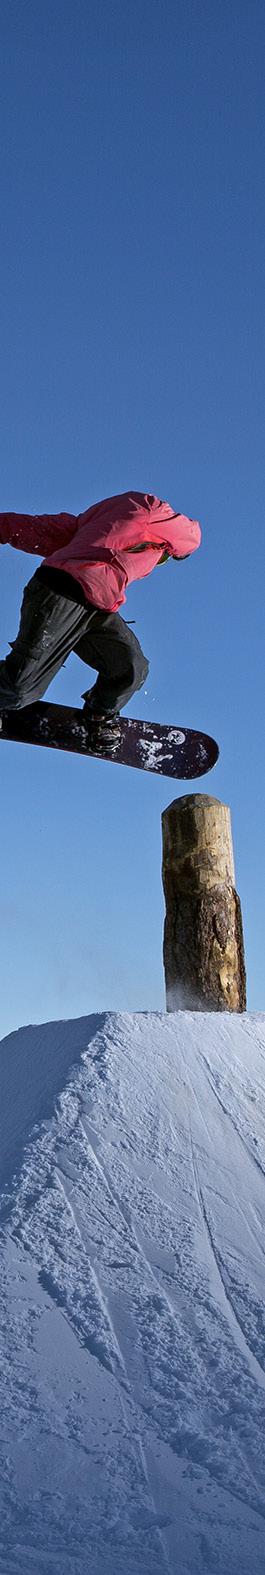 WIR VERFOLGEN GROSSE ZIELE Angebot im Bereich Nachwuchs-Breitensport Freestyle für alle Skiclubs im Oberengadin (Snowboard und Freeski) Professionelle